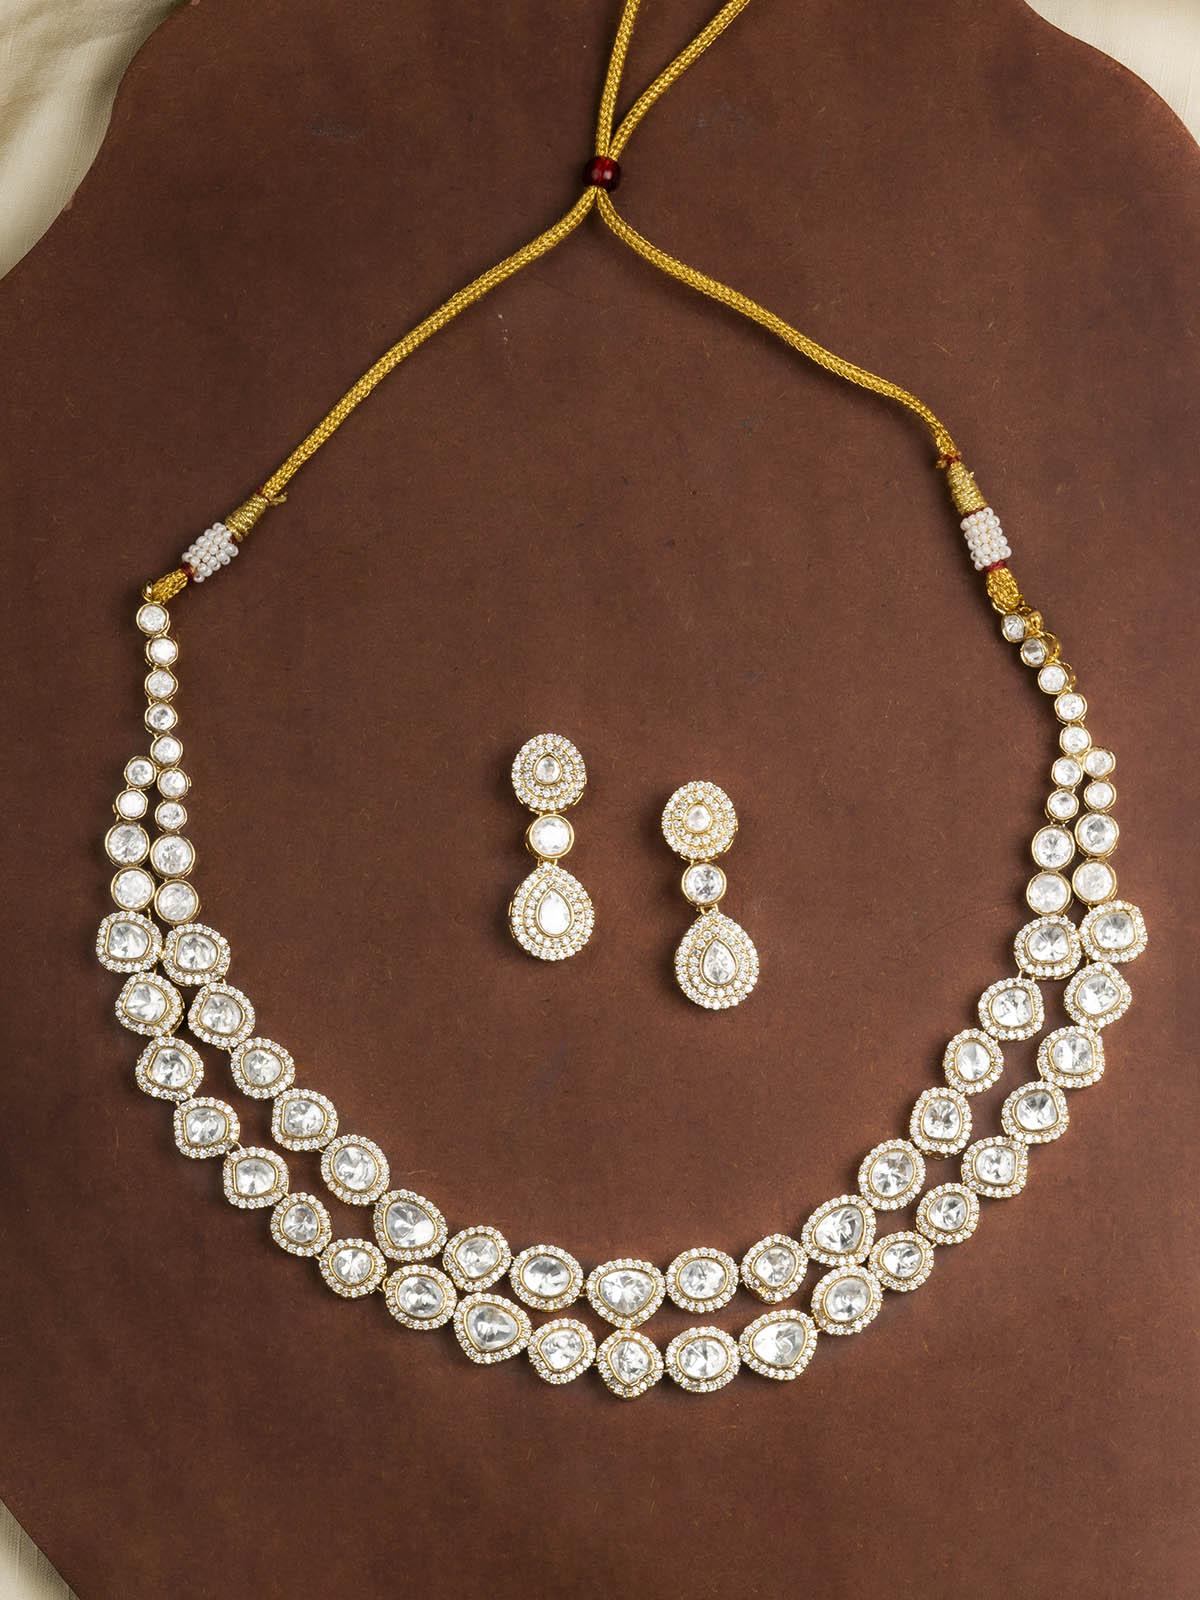 PK-S73 - White Color Faux Diamond Necklace Set